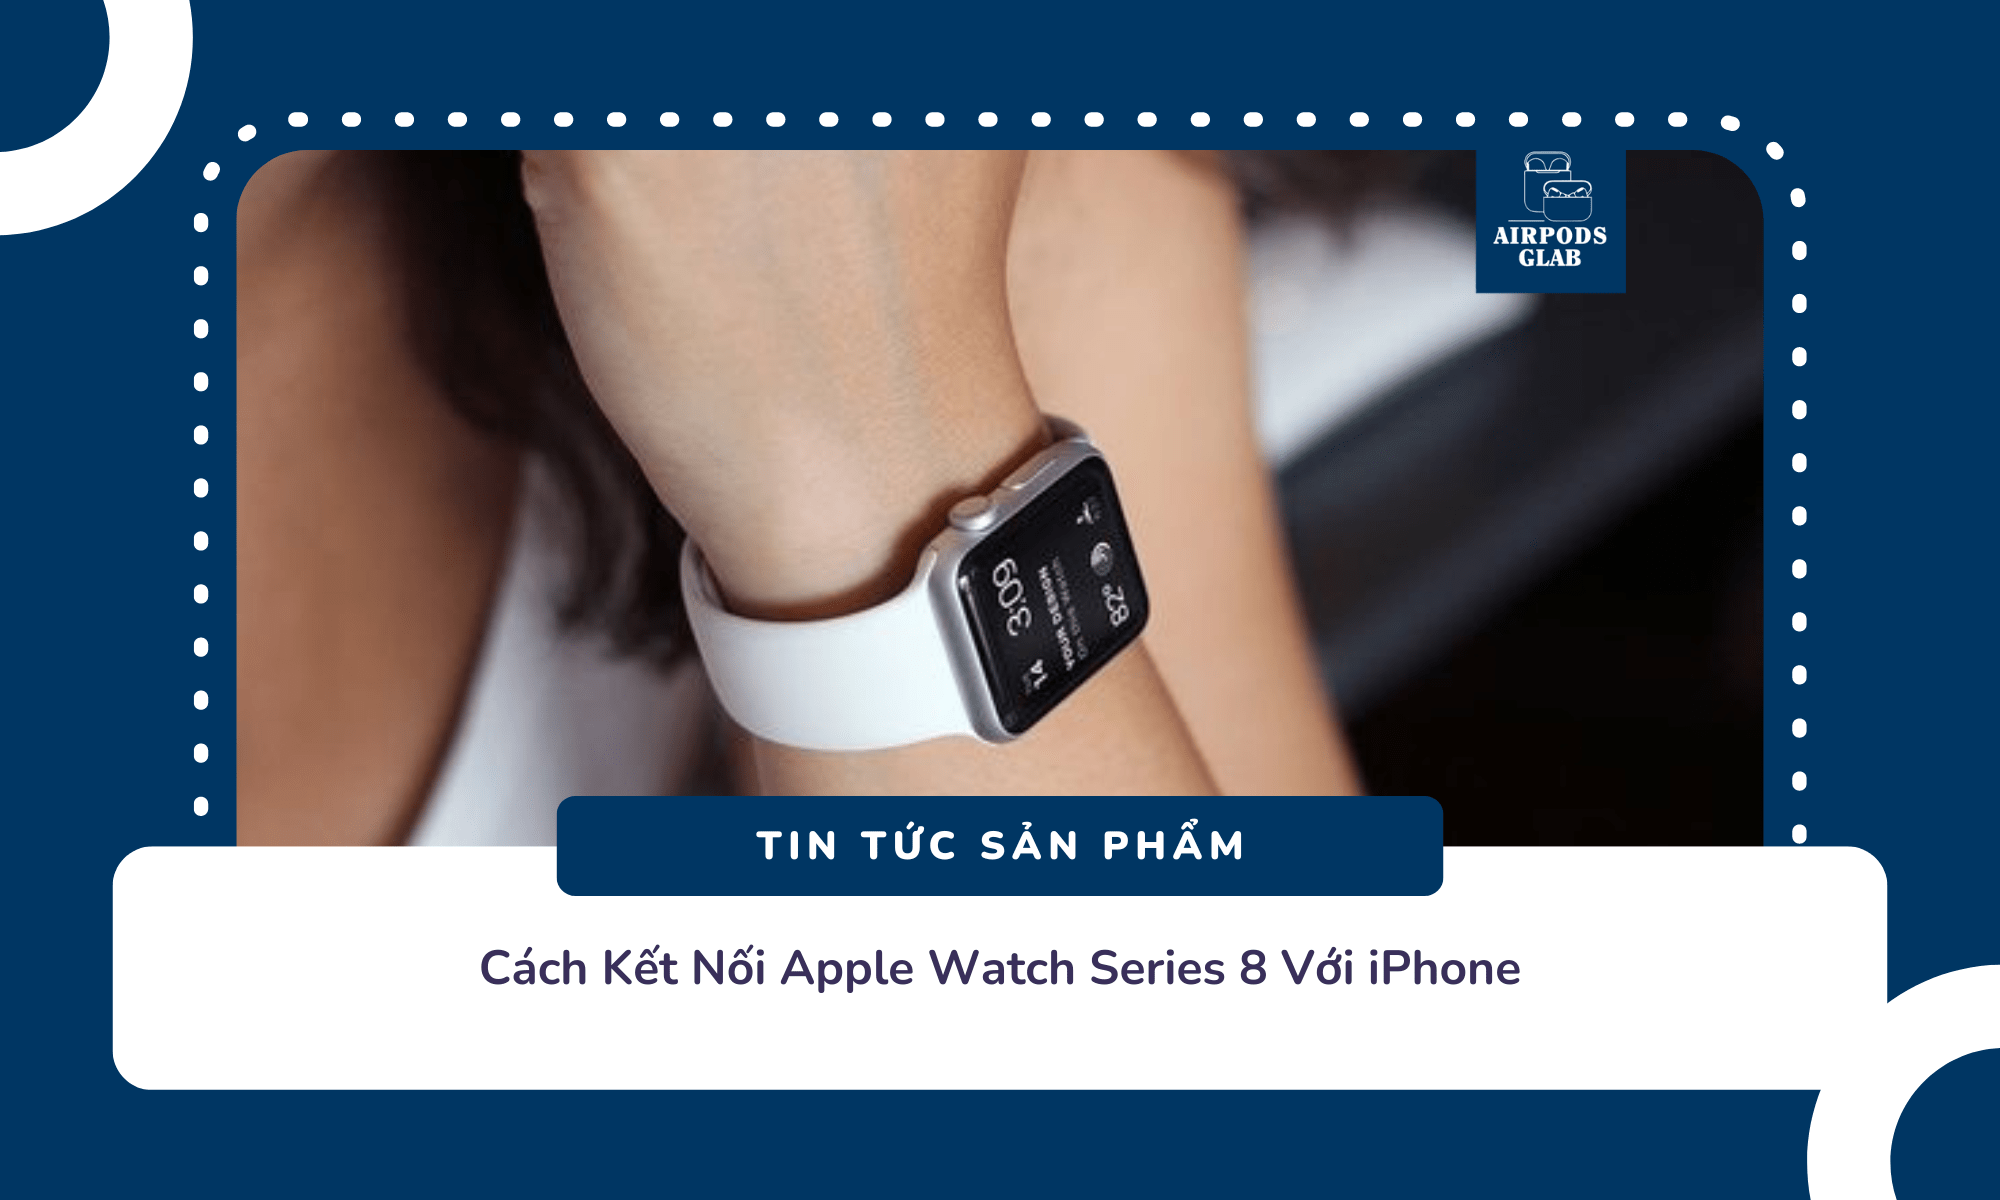 cach-ket-noi-apple-watch-series-8-voi-iphone